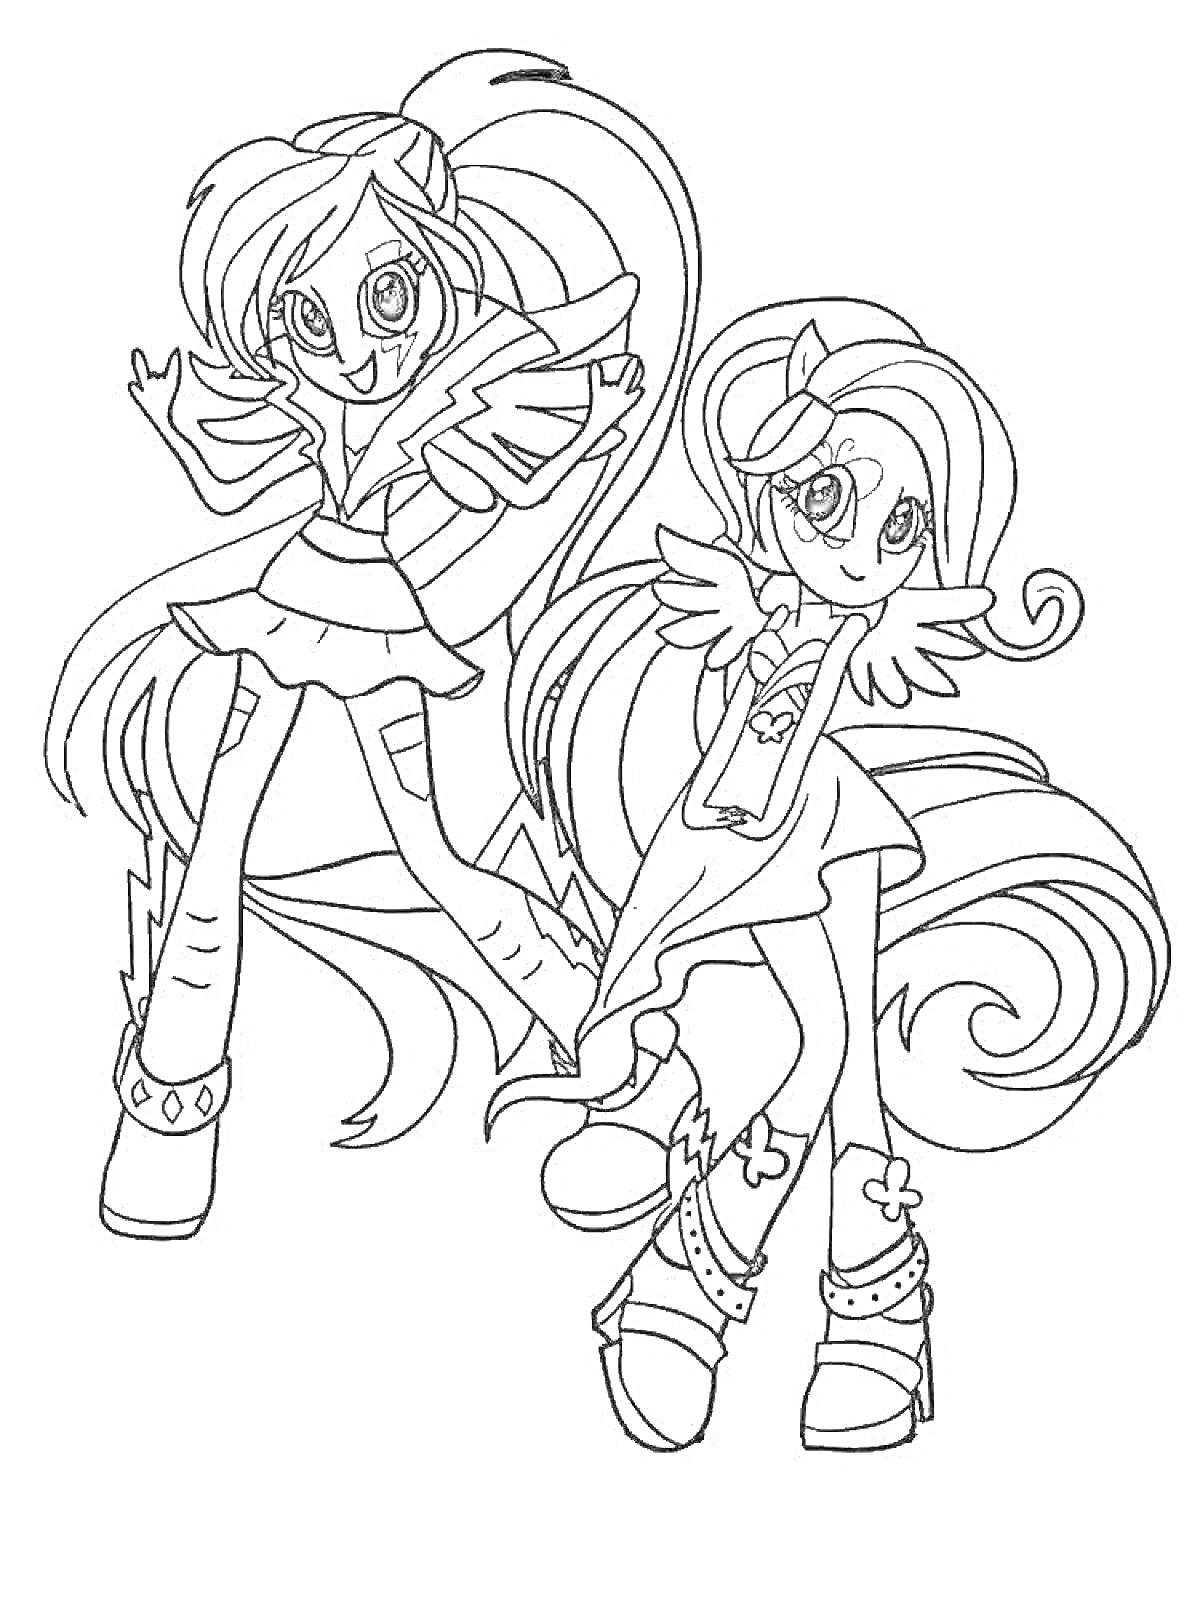 Раскраска Две девочки с длинными волосами и крыльями, одетые в юбки и ботинки